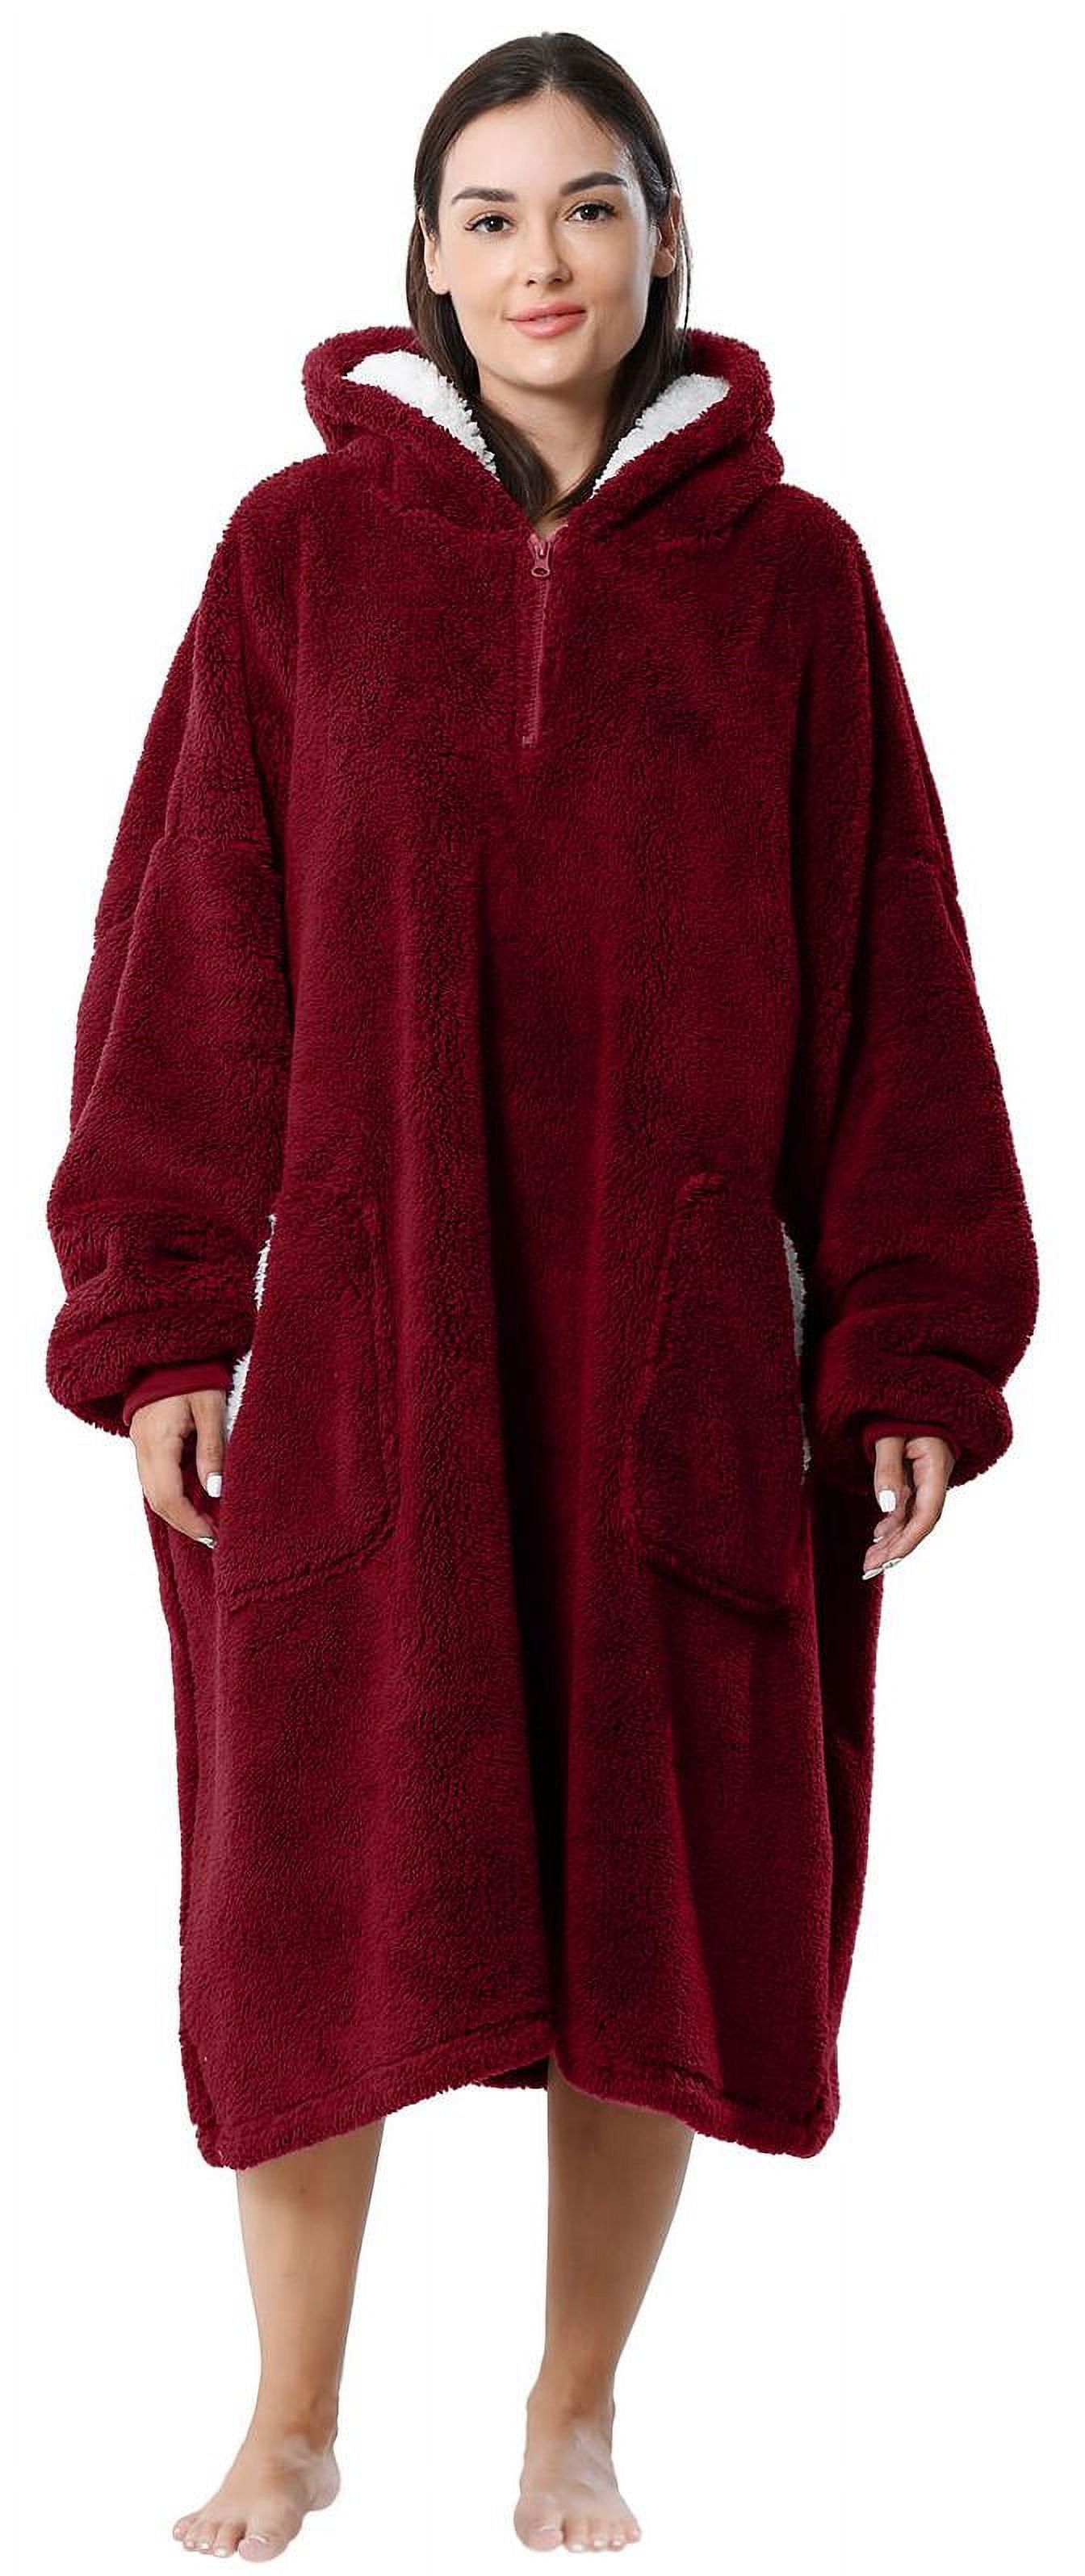 Wearable Blanket, LOFIR Blanket Hoodies, Soft Warm Fleece Wearable ...